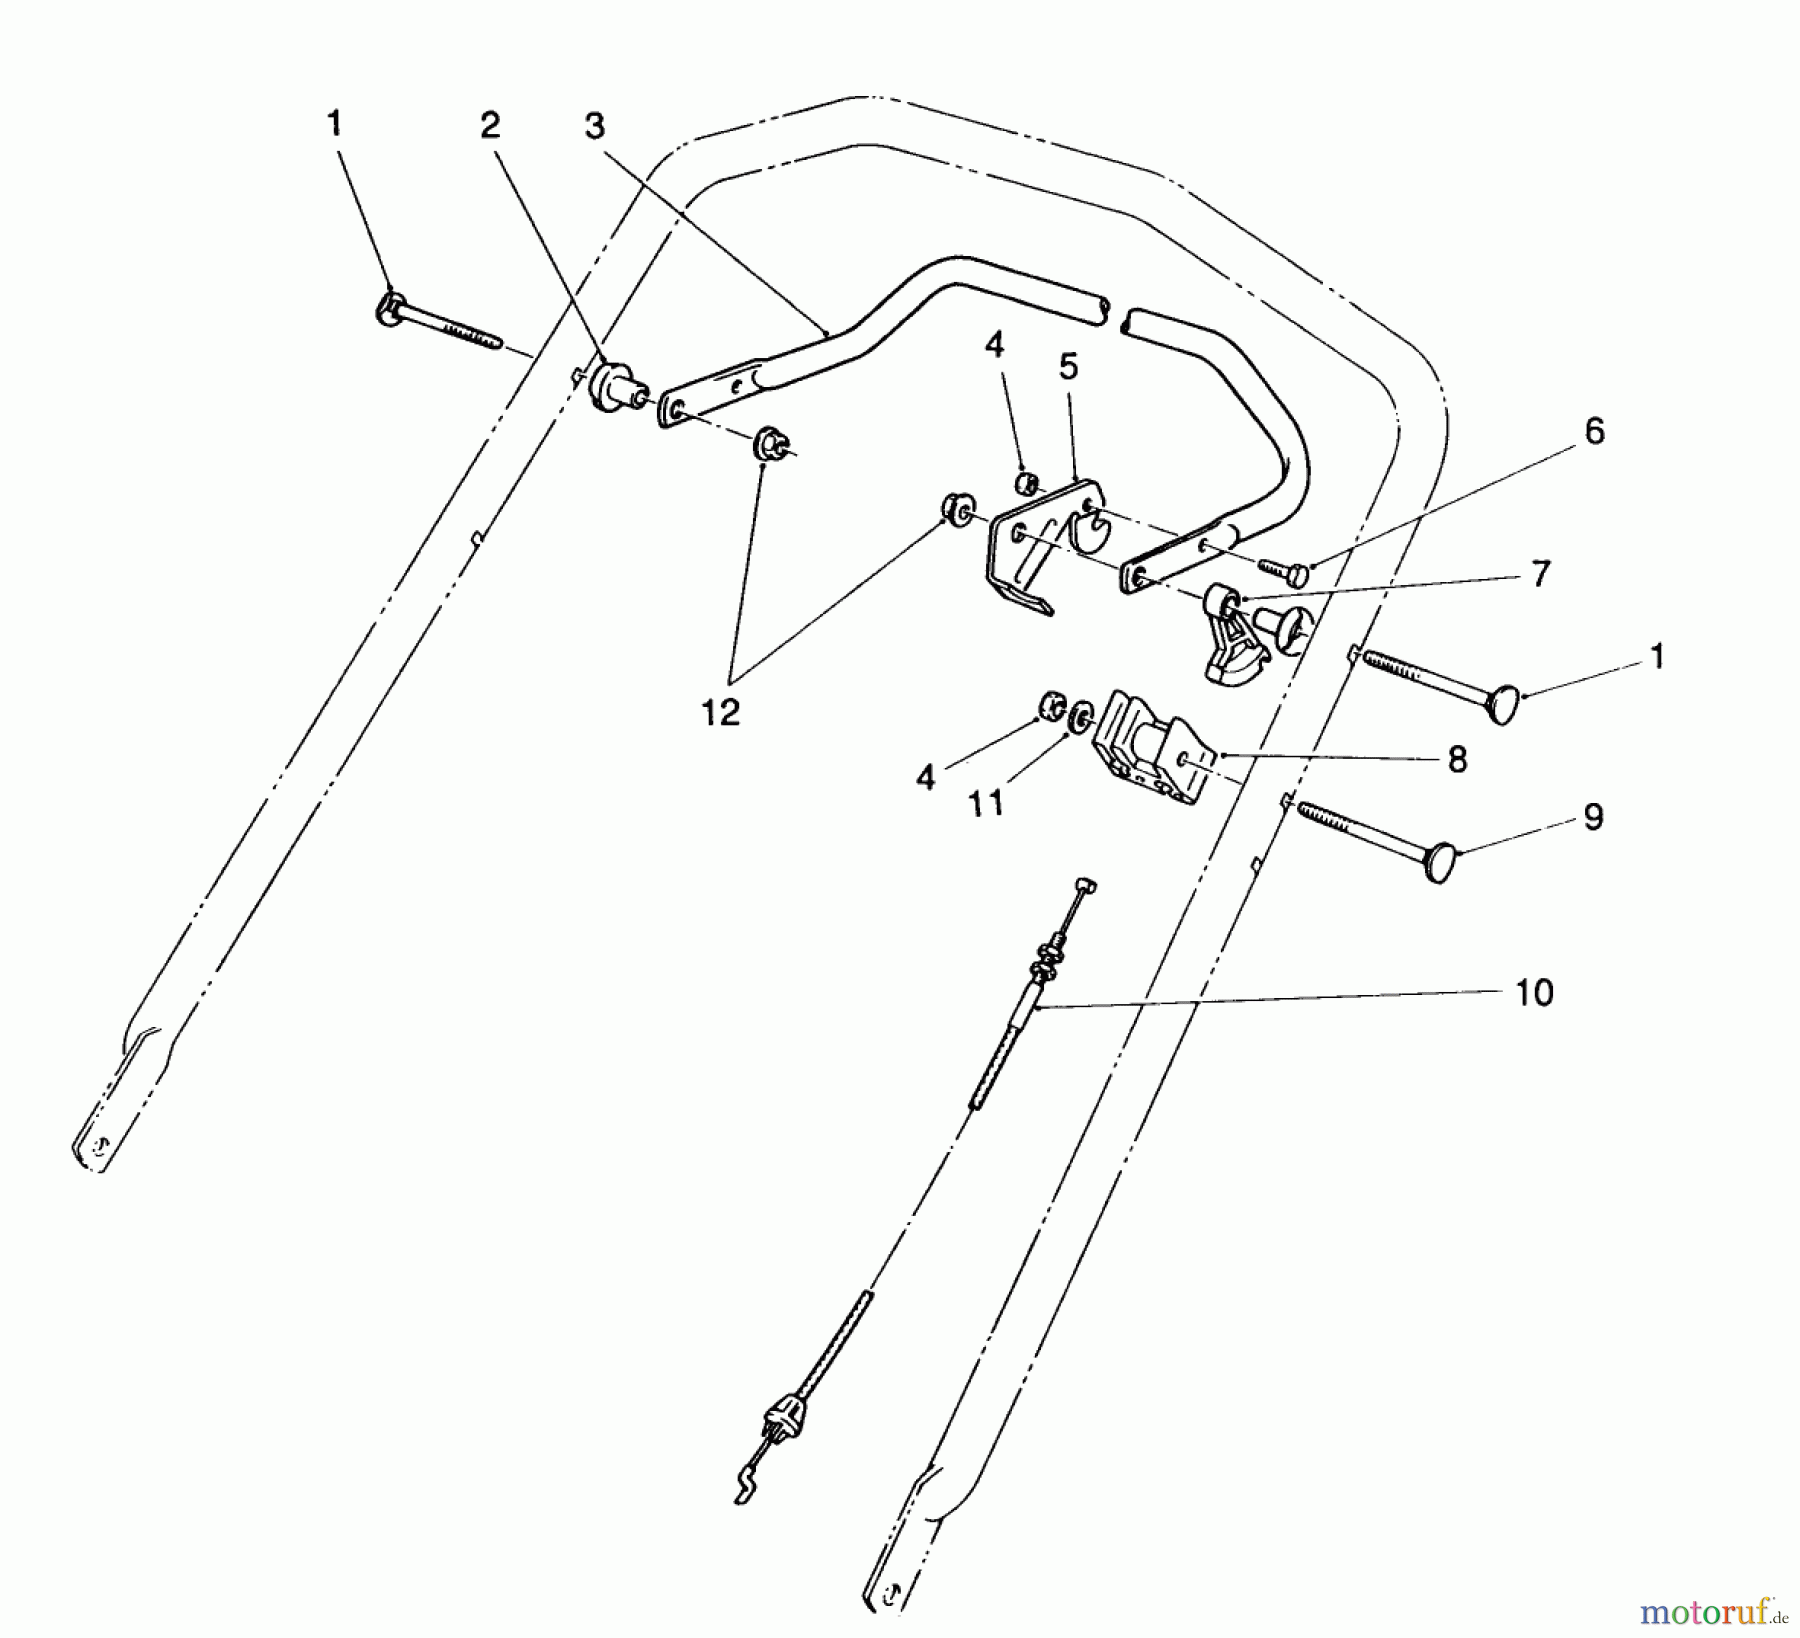  Toro Neu Mowers, Walk-Behind Seite 2 26625CS - Toro Lawnmower, 1989 (9000001-9999999) TRACTION CONTROL ASSEMBLY